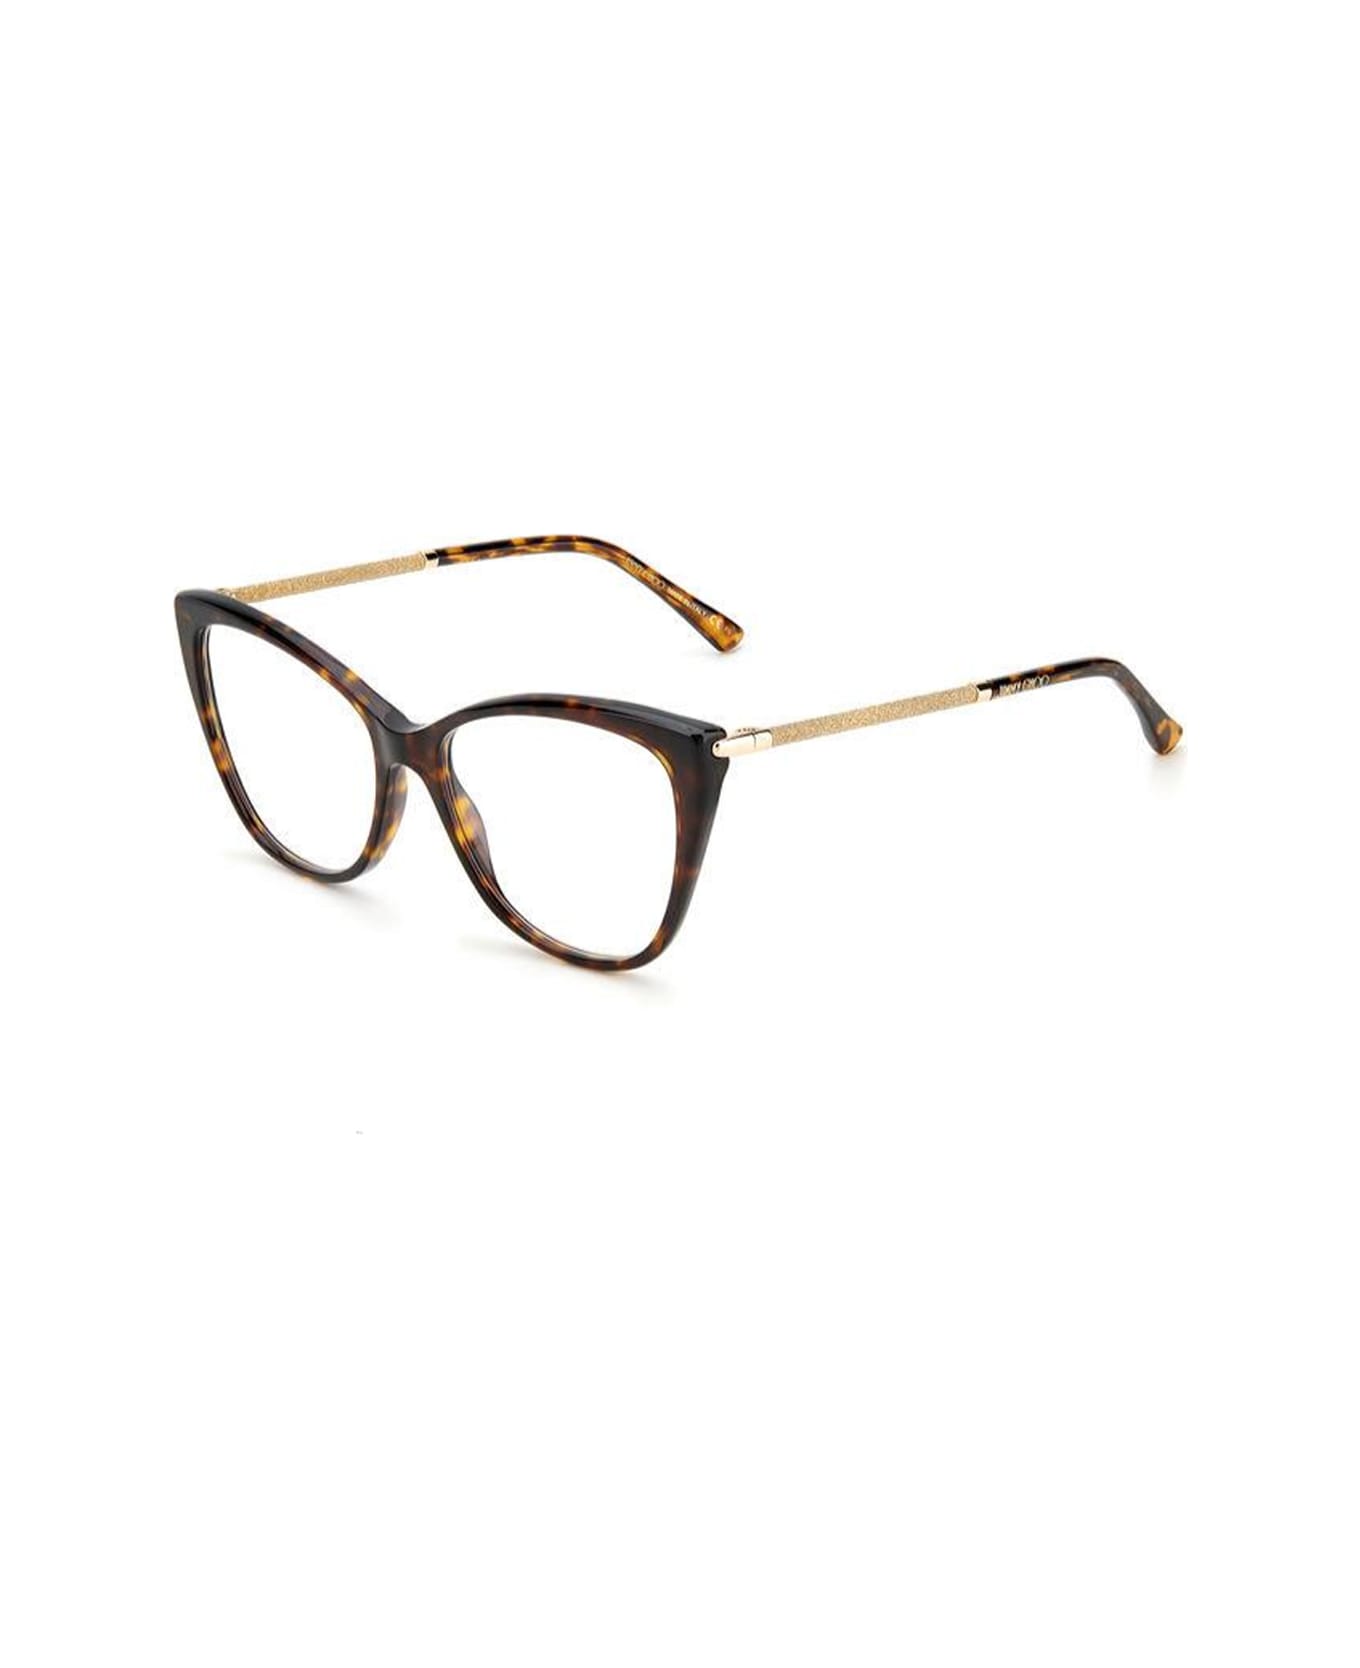 Jimmy Choo Eyewear Jc331 086/16 Glasses - Marrone